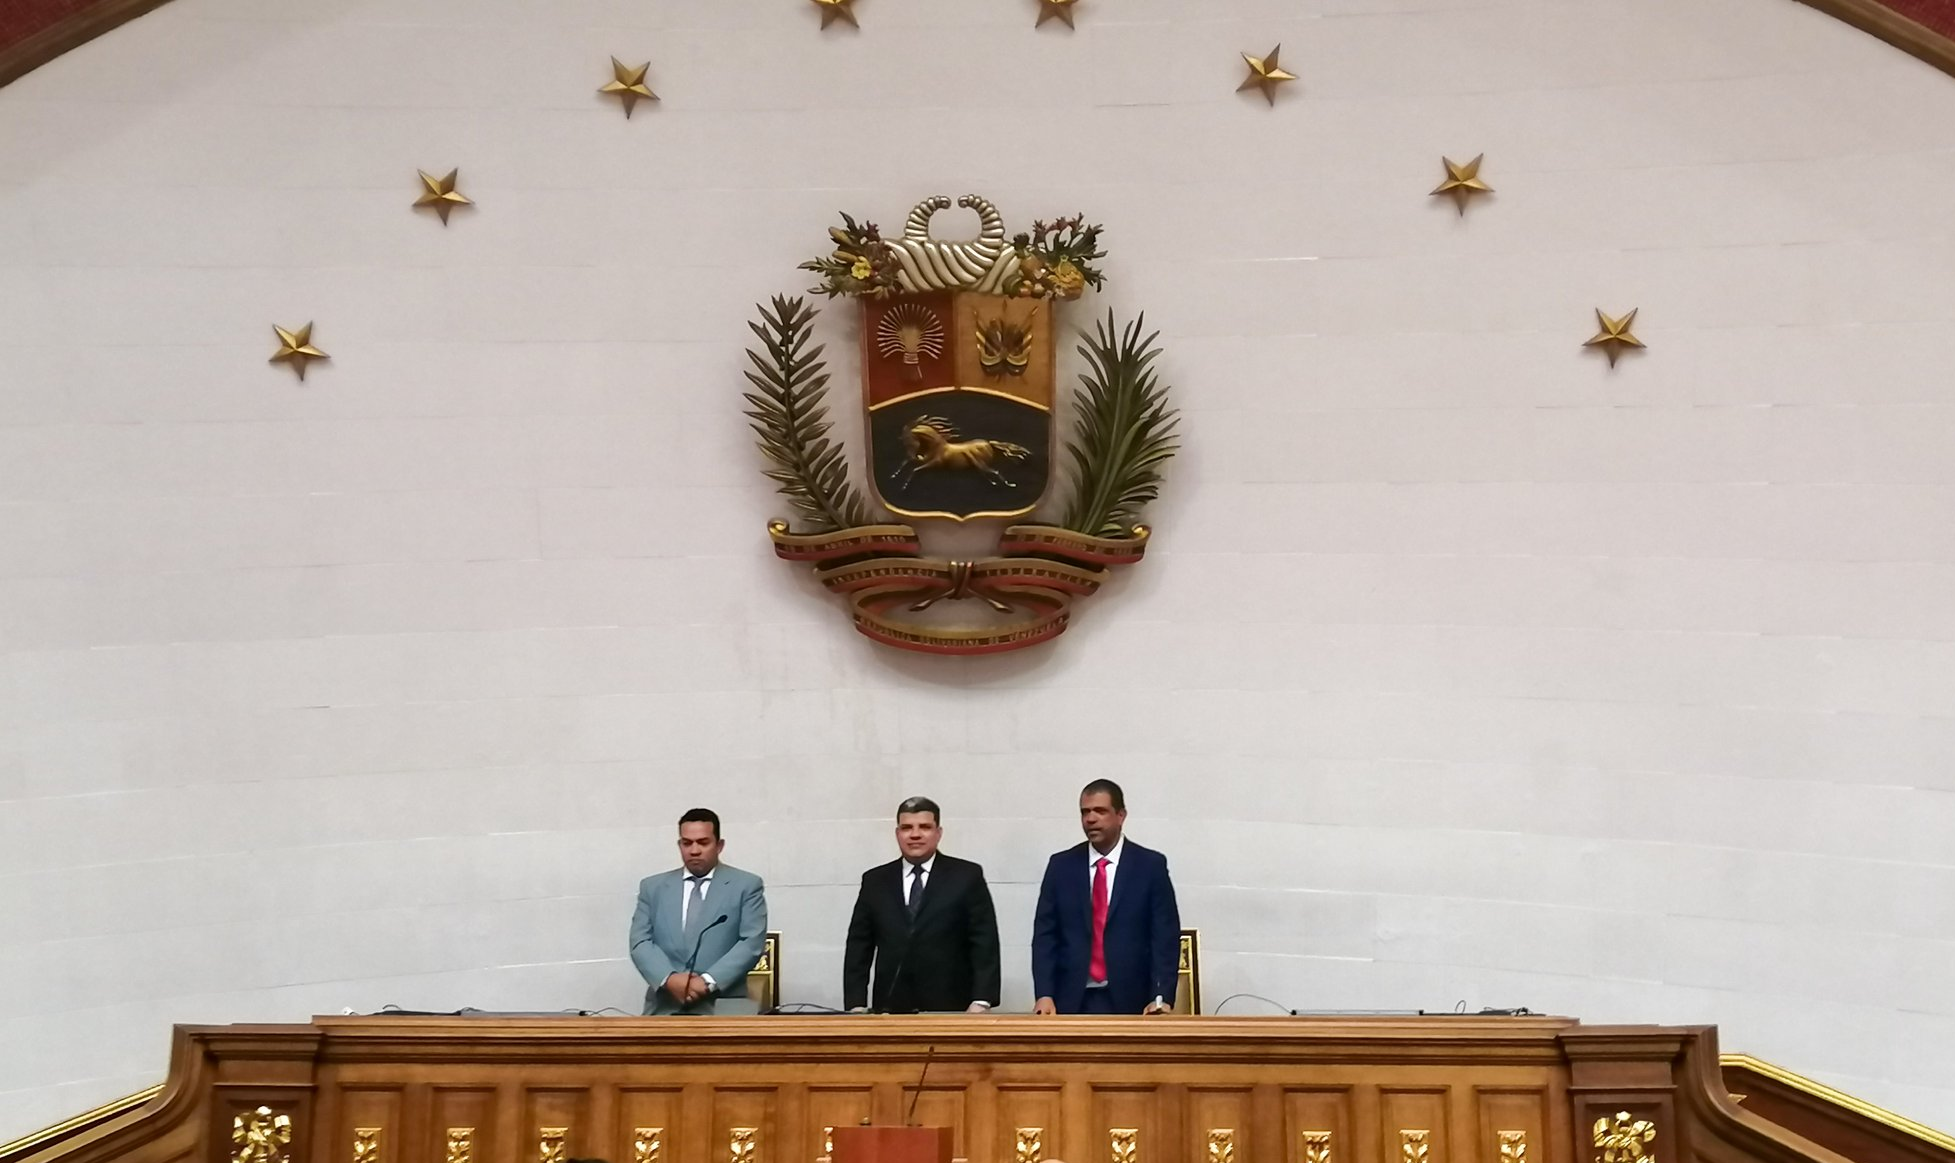 'Para salvar o Parlamento devemos colocar a Venezuela em primeiro lugar', disse novo presidente; Guaidó, que alegou bloqueio para entrar na AN, iniciou uma sessão não oficial ao lado de apoiadores e 'assumiu a presidência do Parlamento'